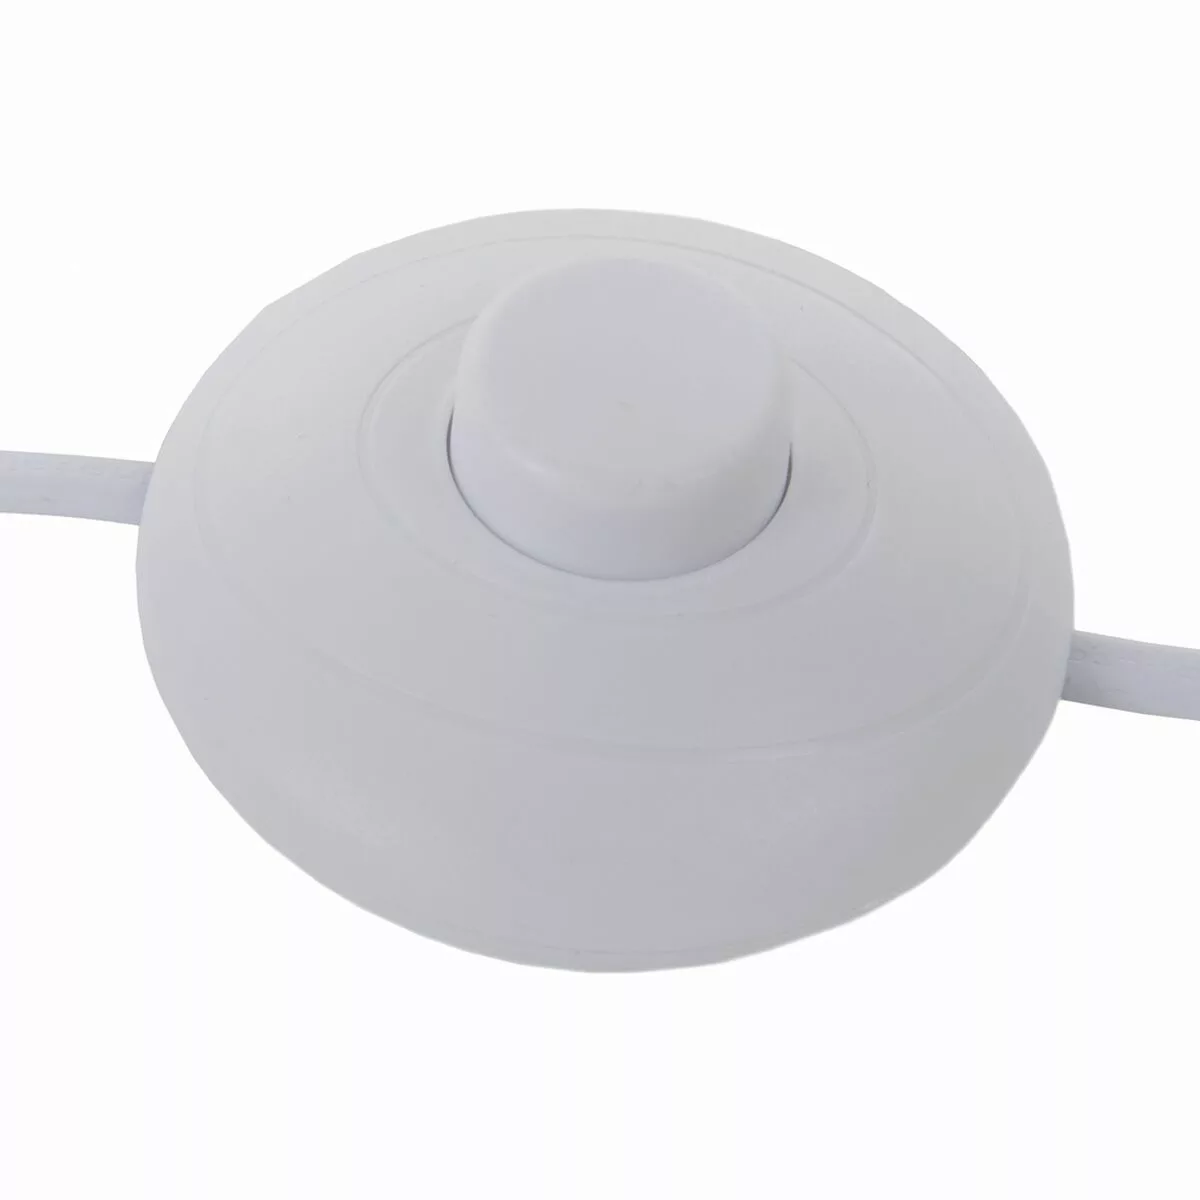 Stehlampe Metall Weiß 36 X 36 X 160 Cm günstig online kaufen